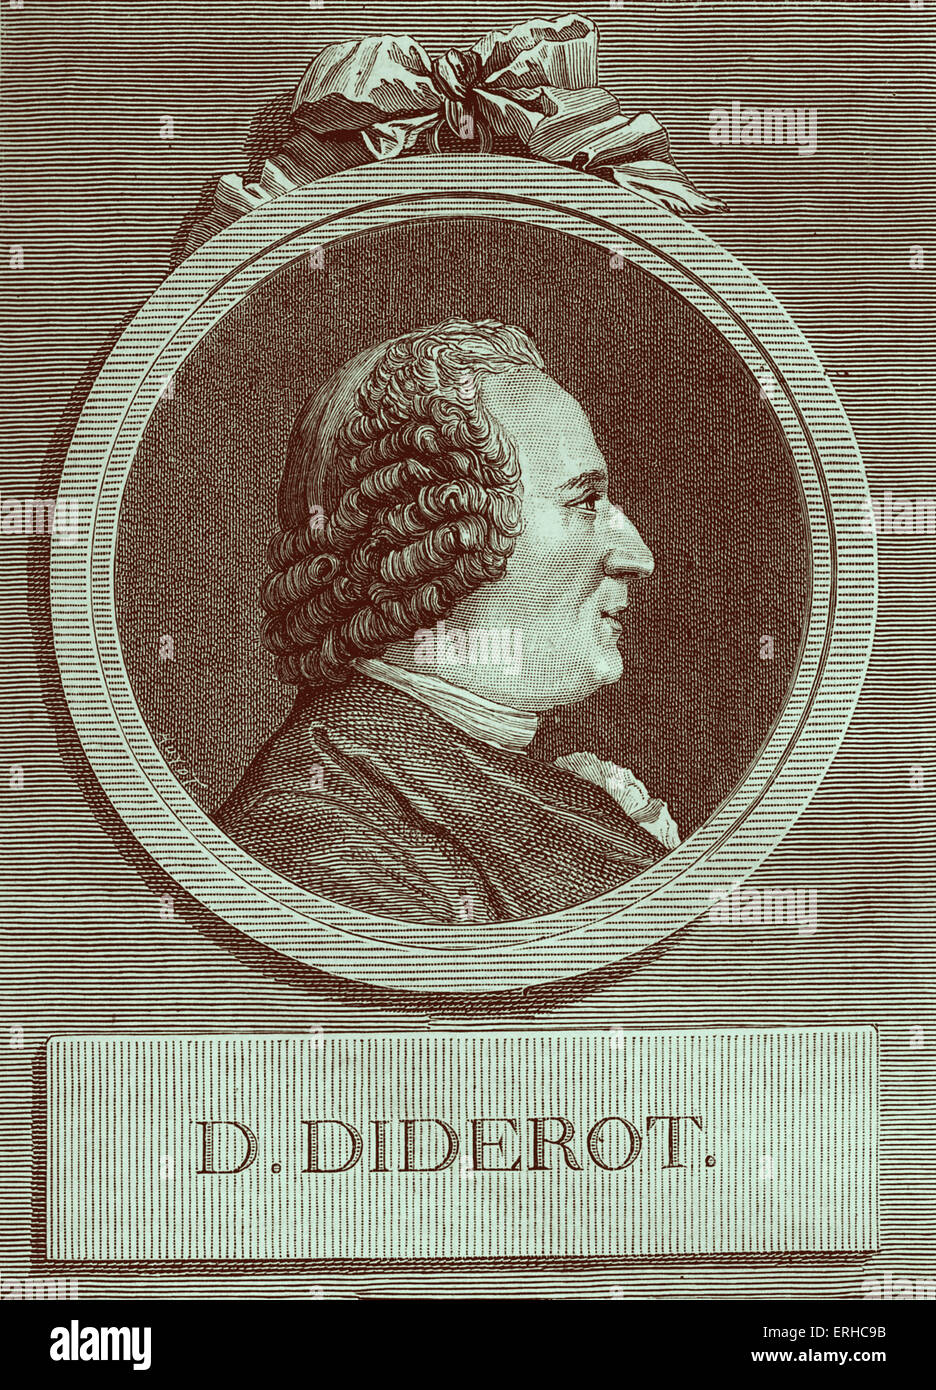 Denis Diderot - écrivain et philosophe des Lumières Françaises et directeur général de la célèbre Encyclopedia (Encyclopédie). Banque D'Images